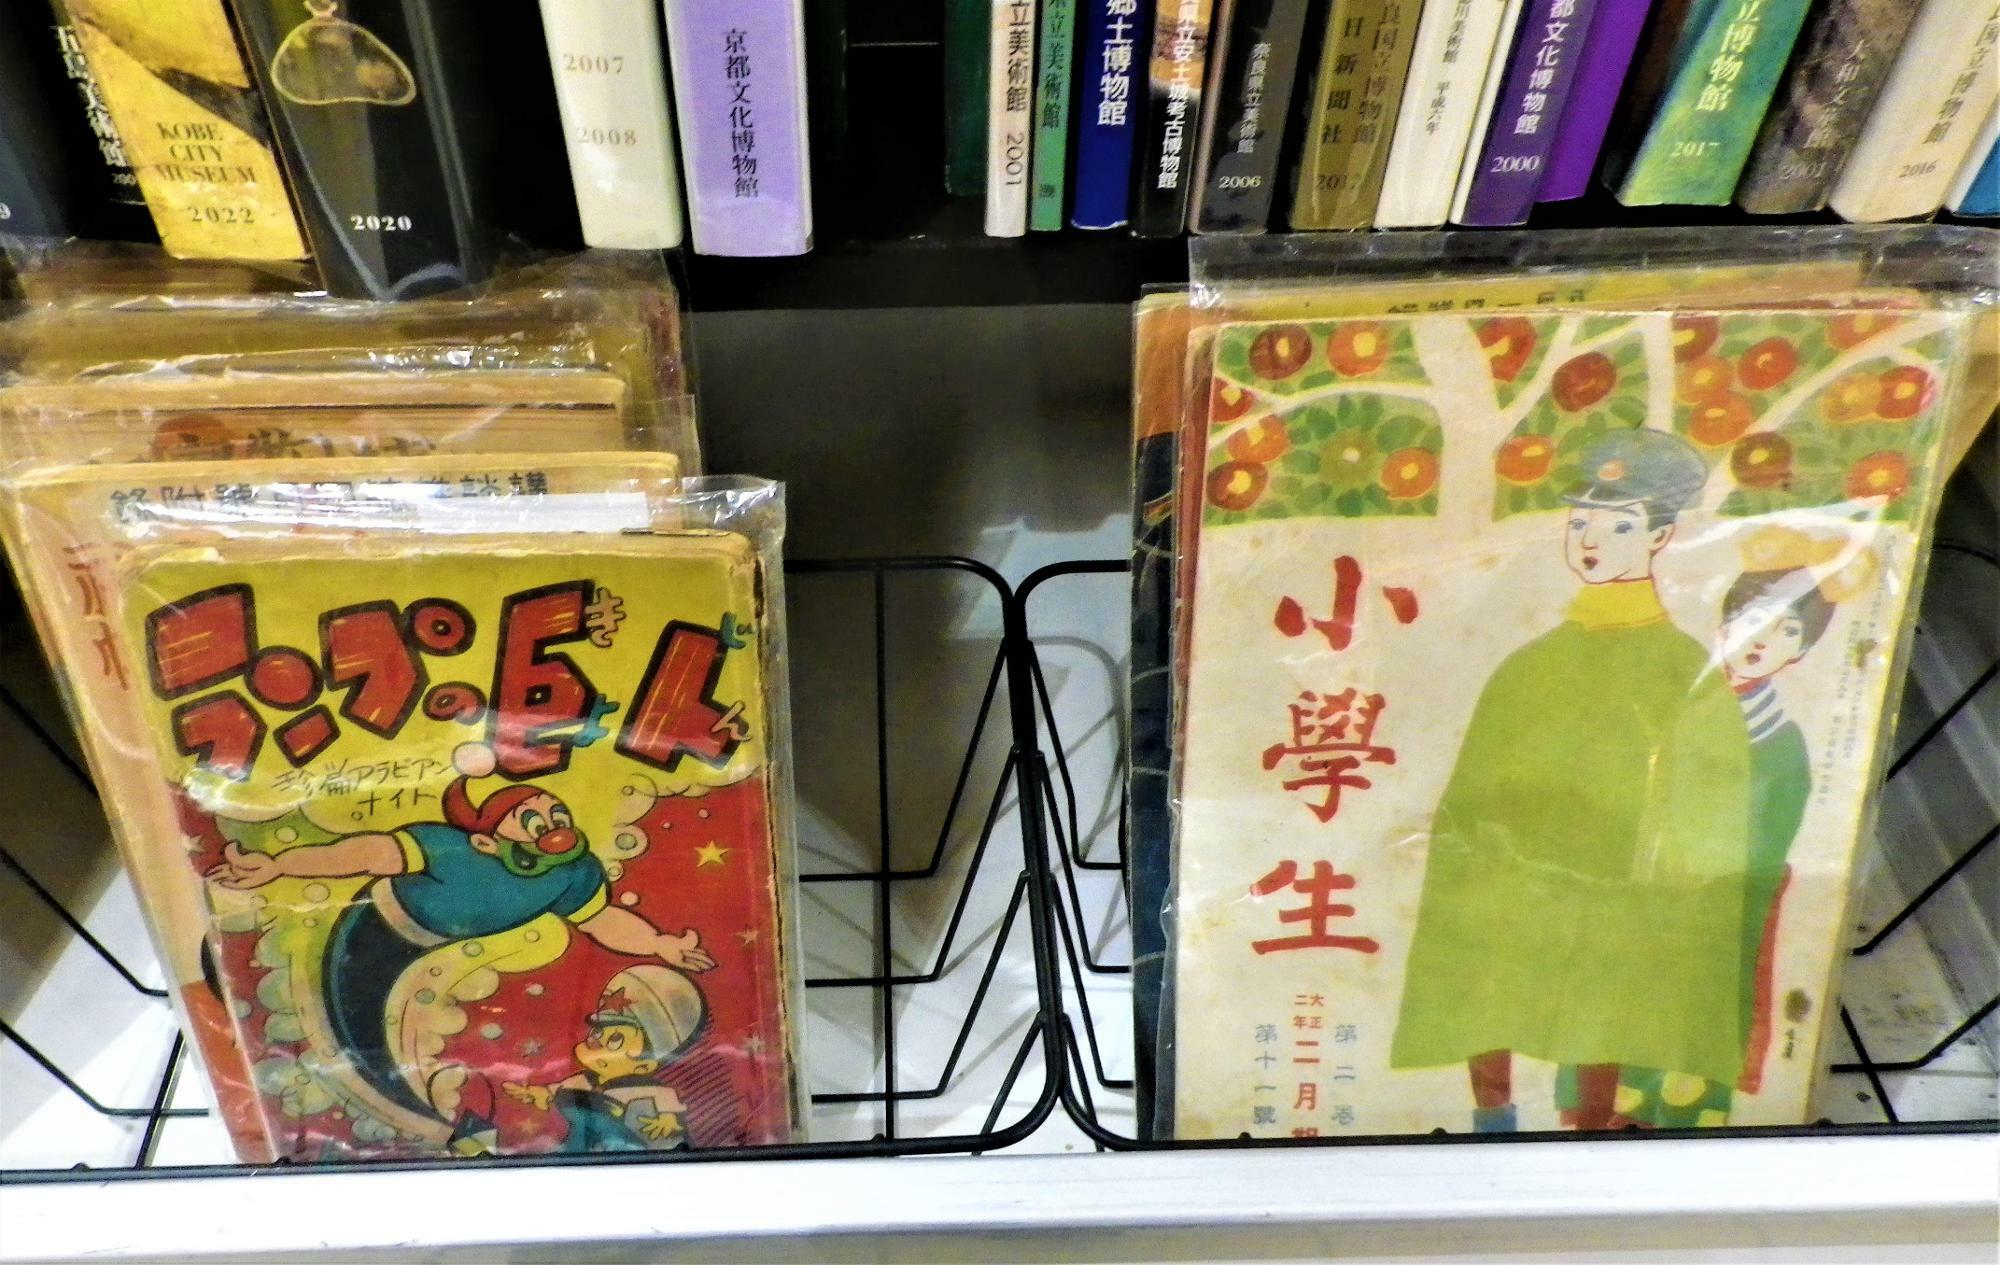 右側の本には「大正二年」とあります。